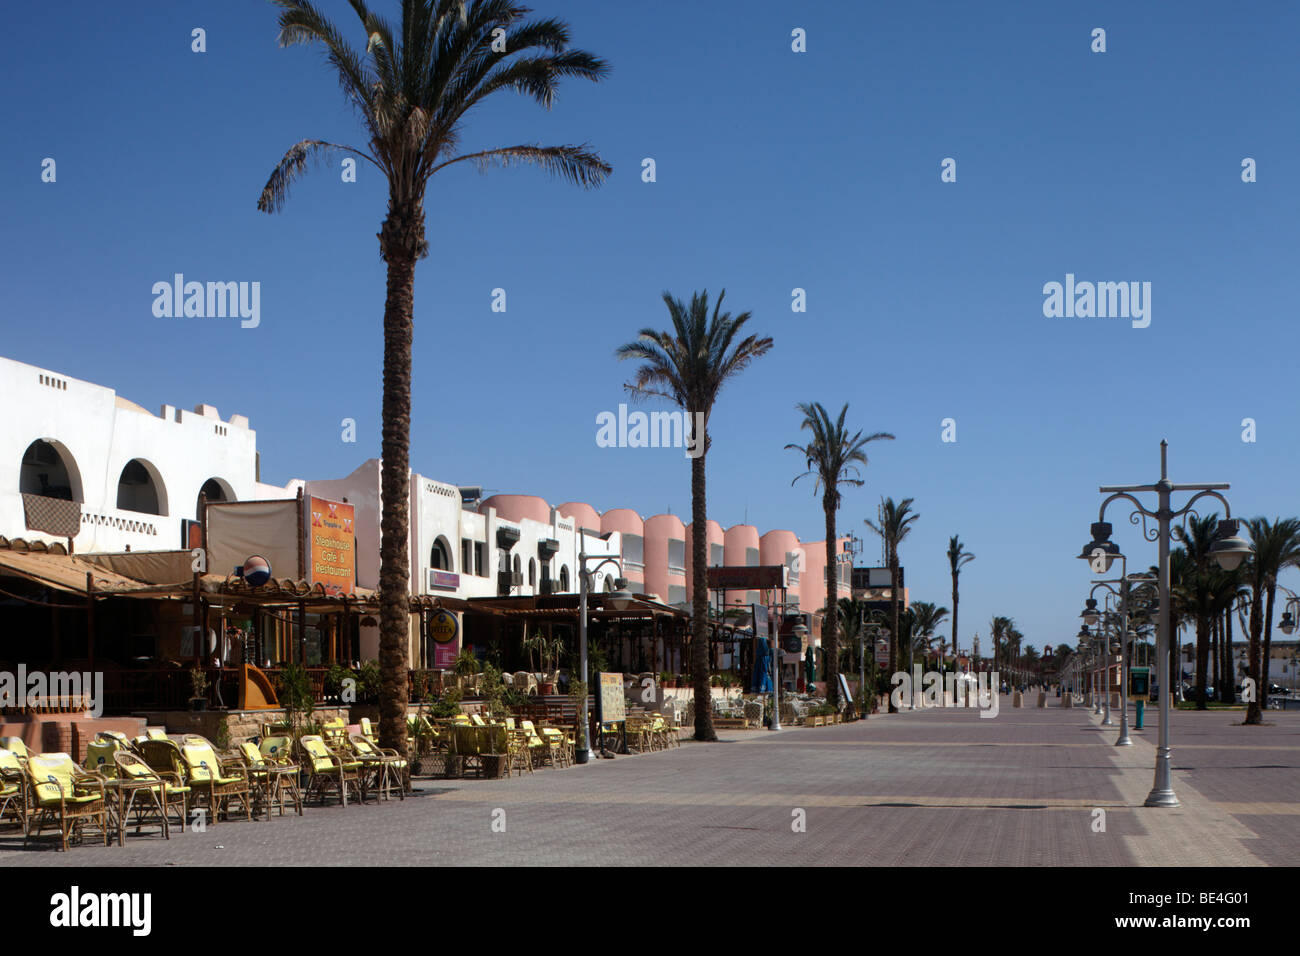 Élégante promenade pour le shopping et les promenades, restaurants, boutiques de souvenirs, dattiers, Yussuf Afifi road, Hurghada, Egypte, rouge Banque D'Images